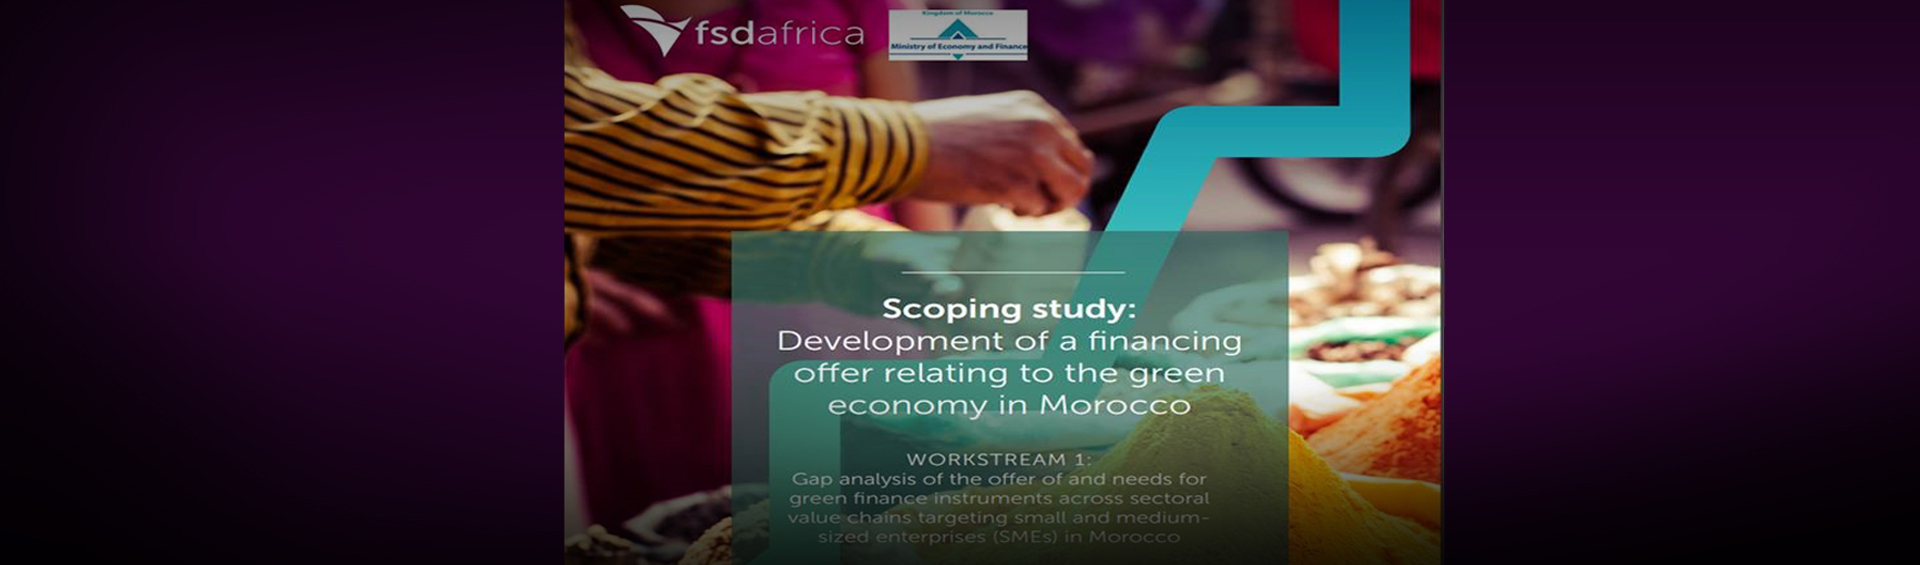 El Ministerio lanza un nuevo estudio - en colaboración con FSD África - que explora las opciones de financiación para las PYME en el marco de la economía verde en auge de Marruecos